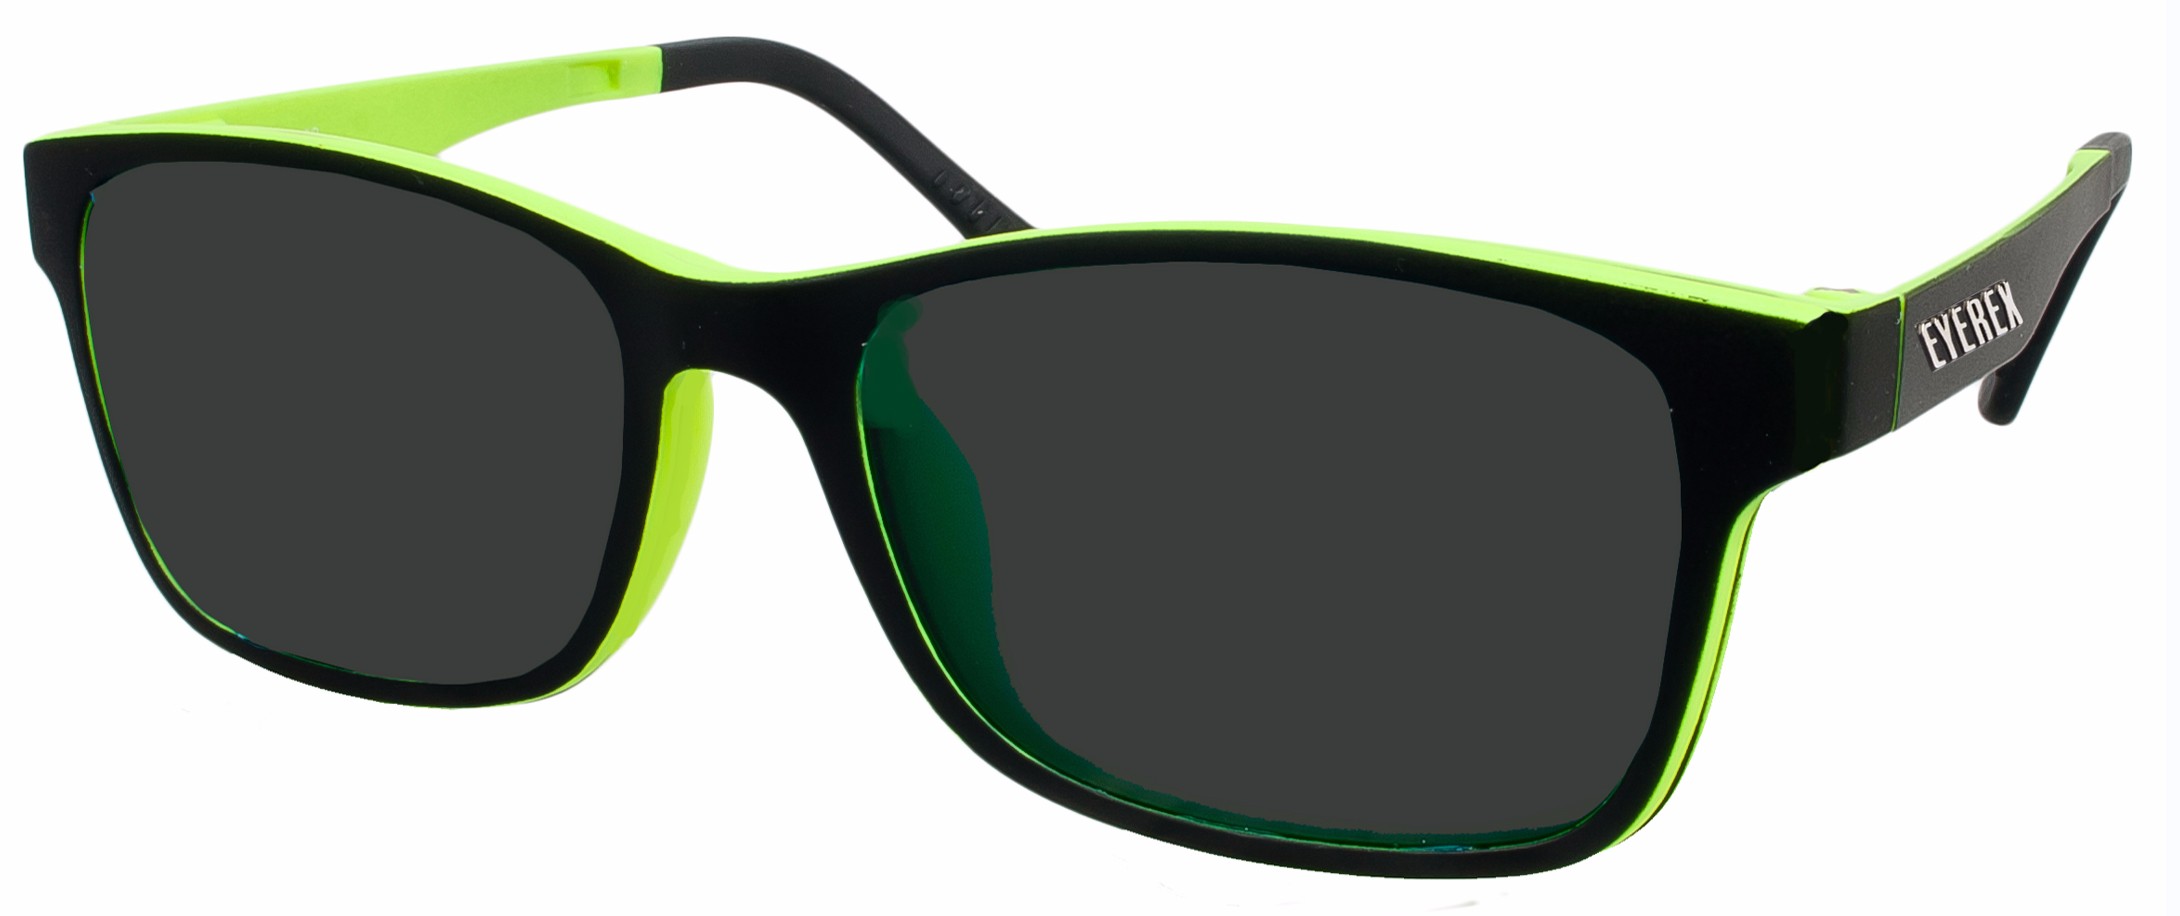 Klipper 8004 schwarz/grün, polarisiert